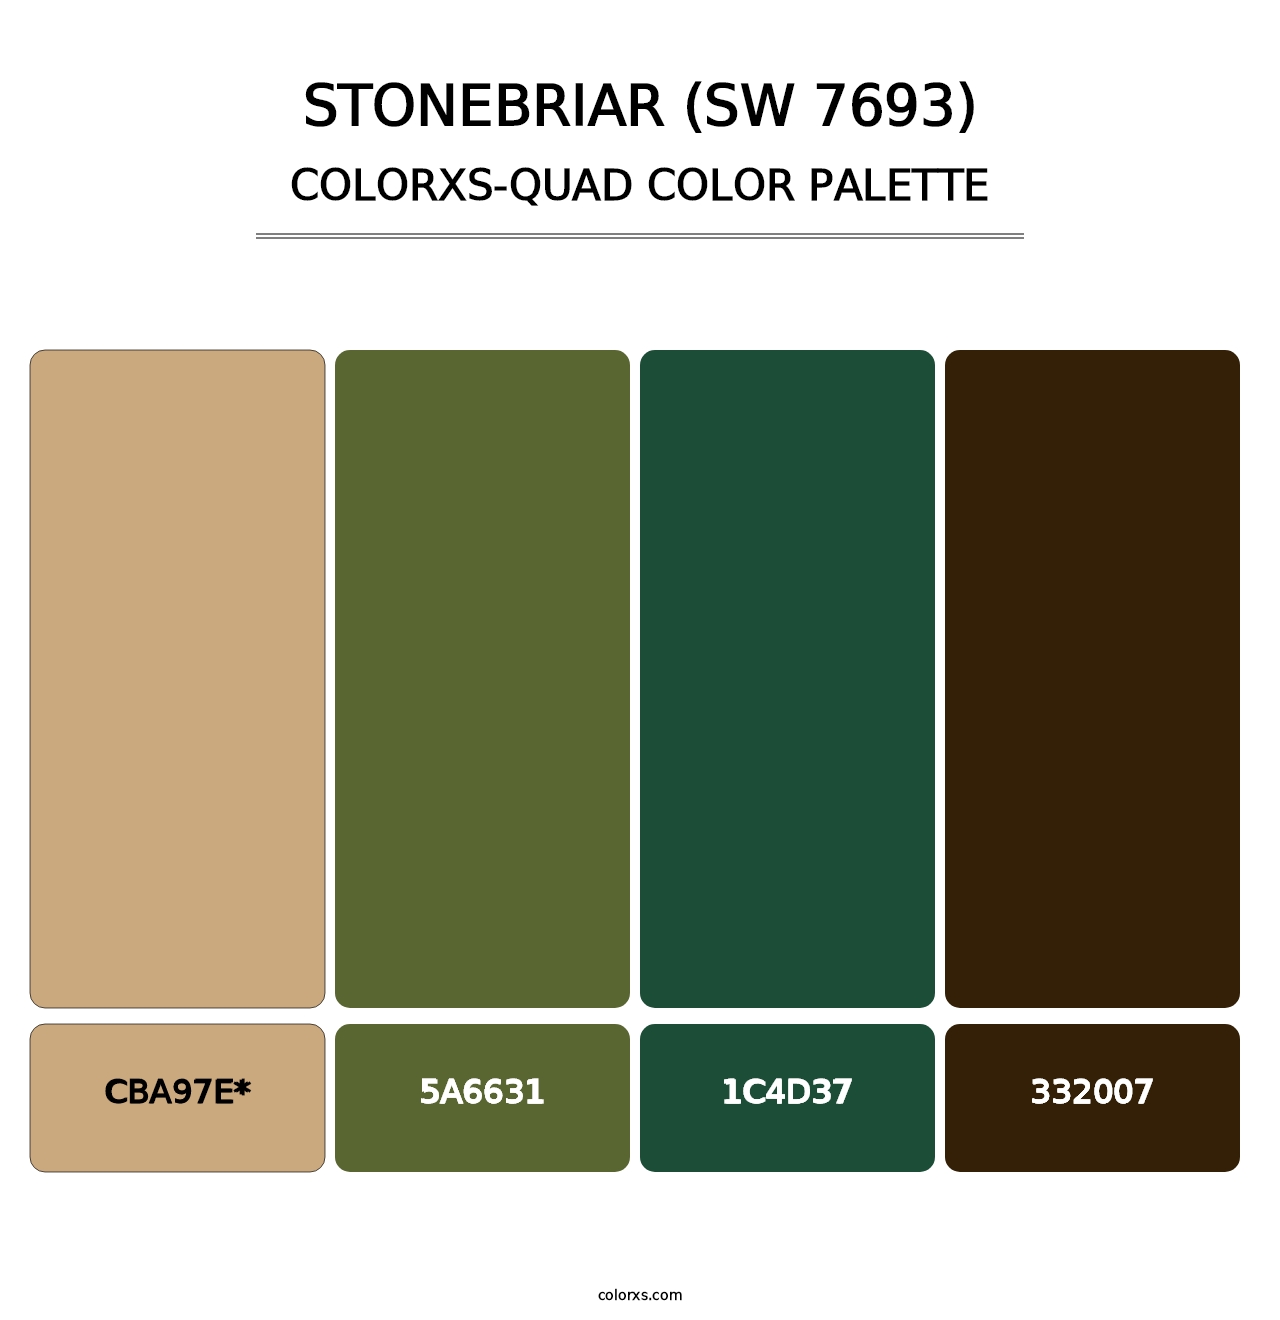 Stonebriar (SW 7693) - Colorxs Quad Palette